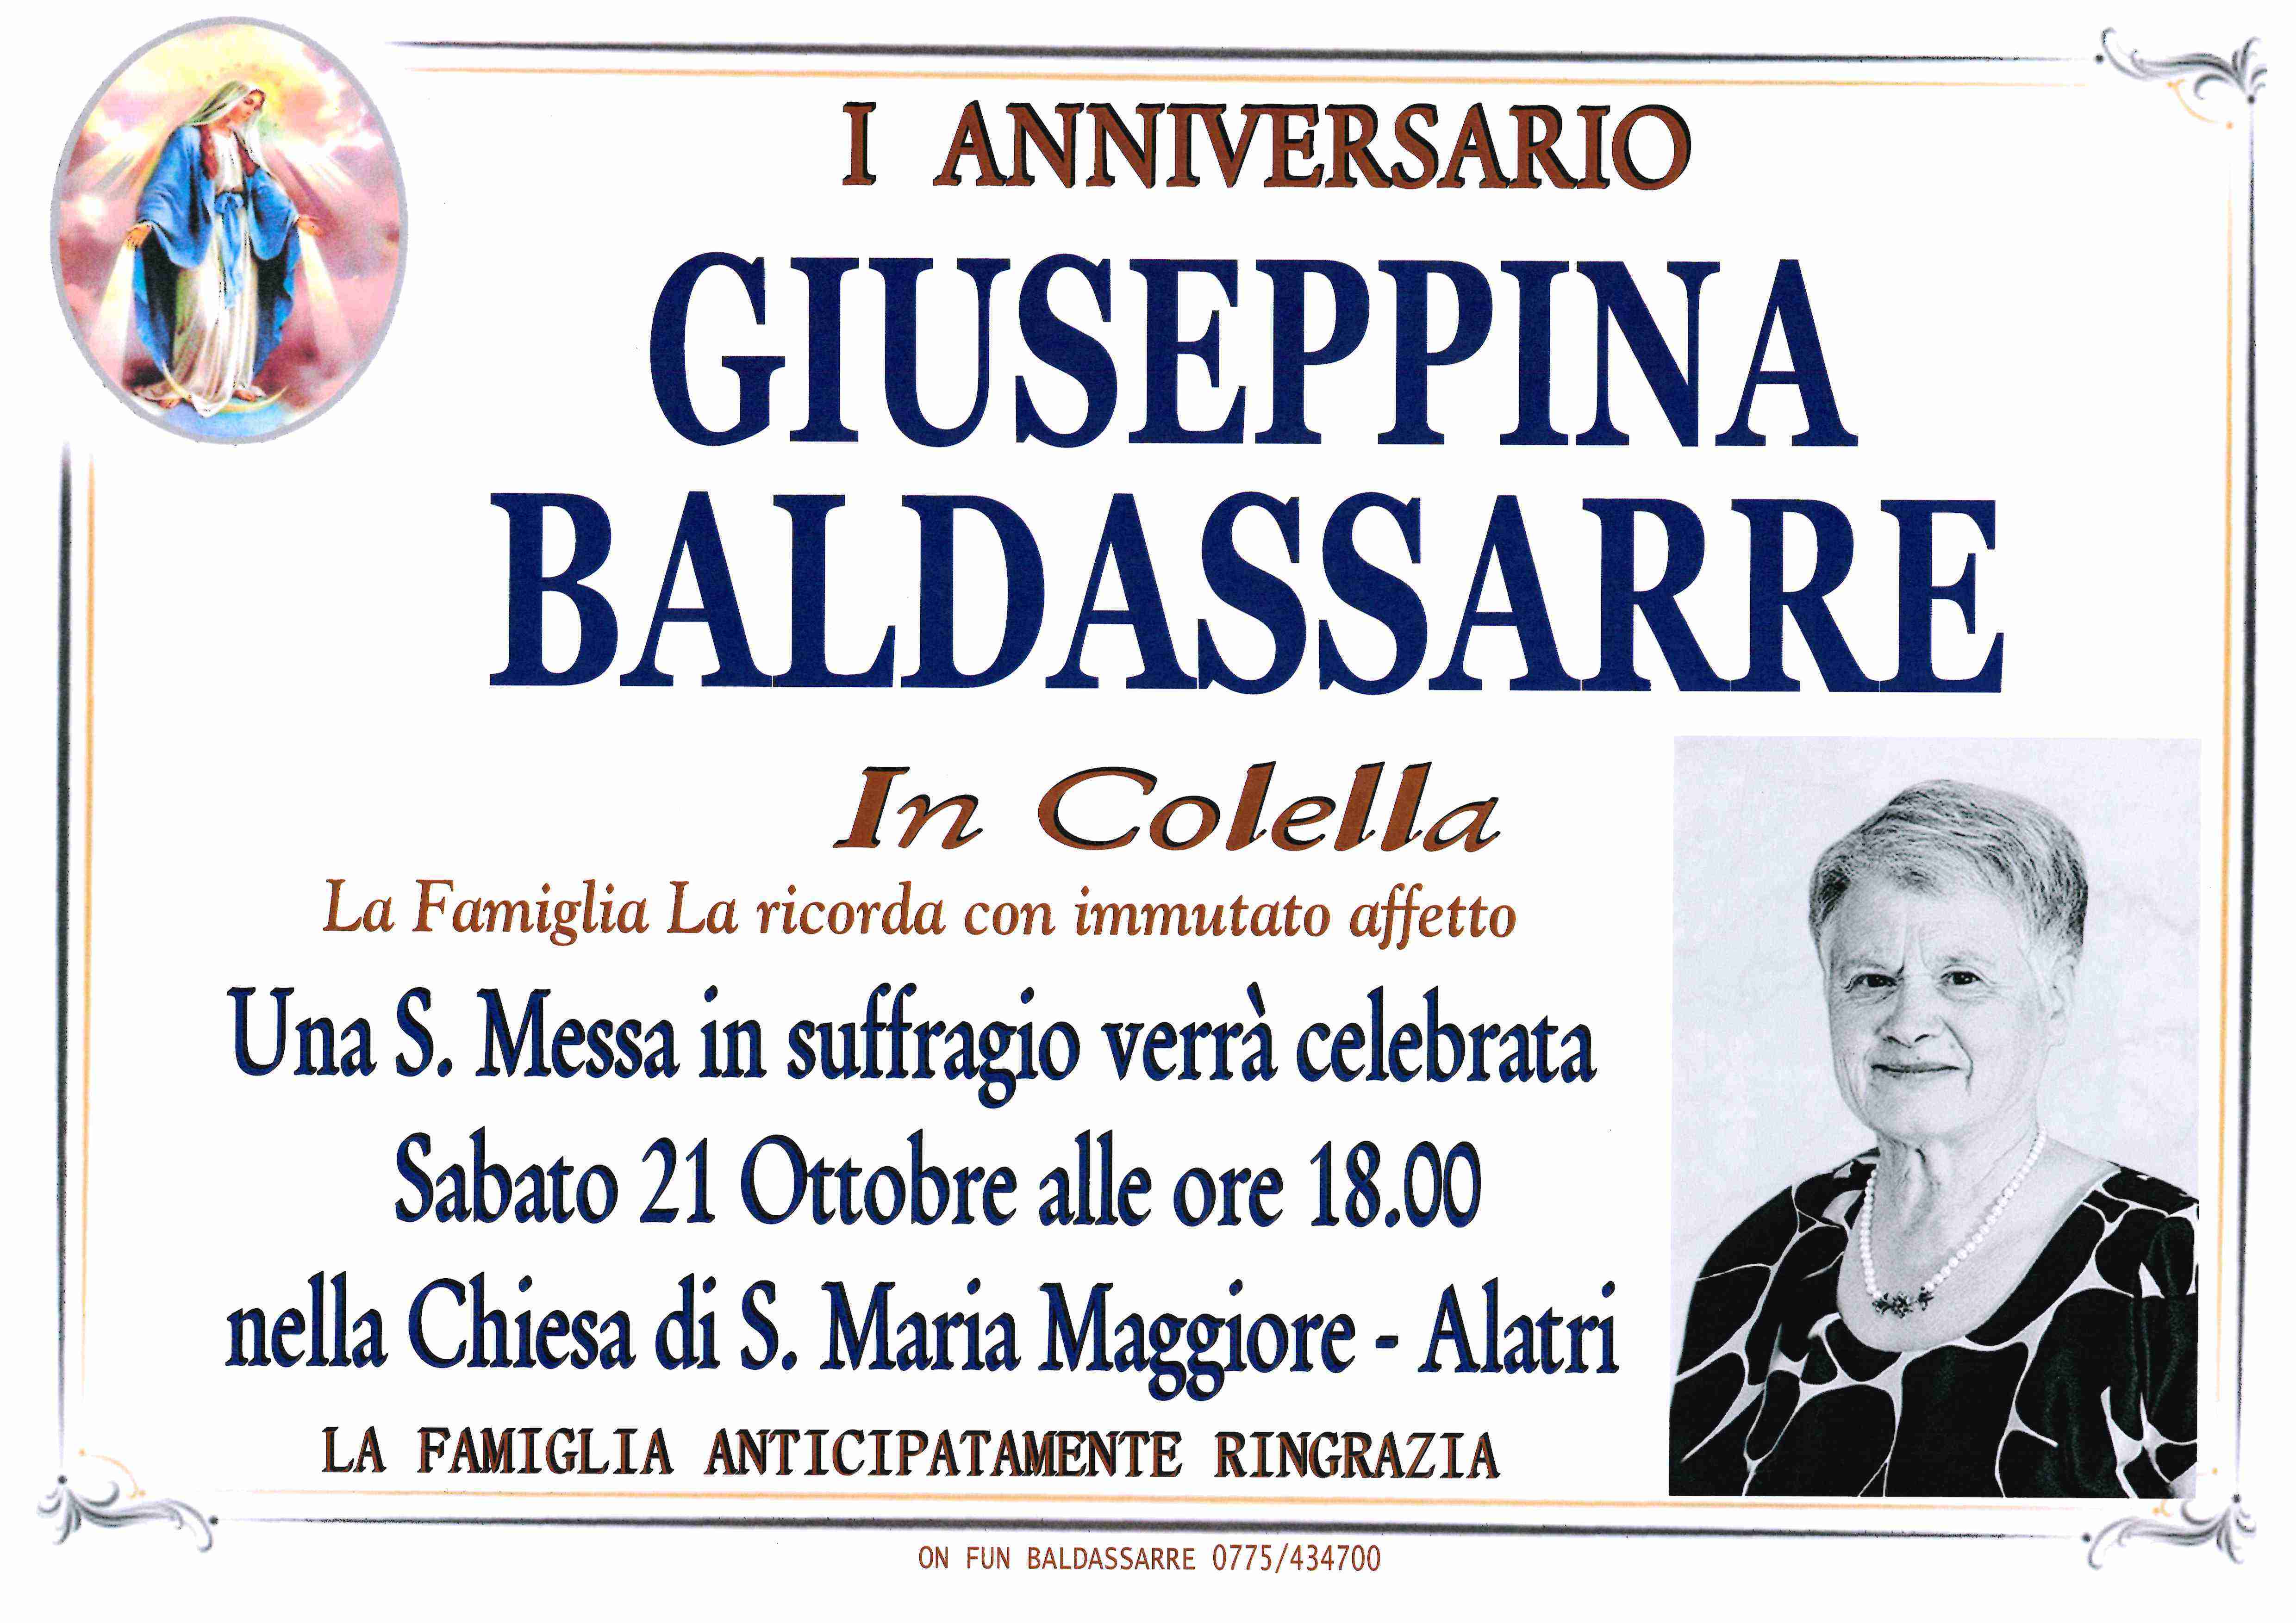 Giuseppina Baldassarre